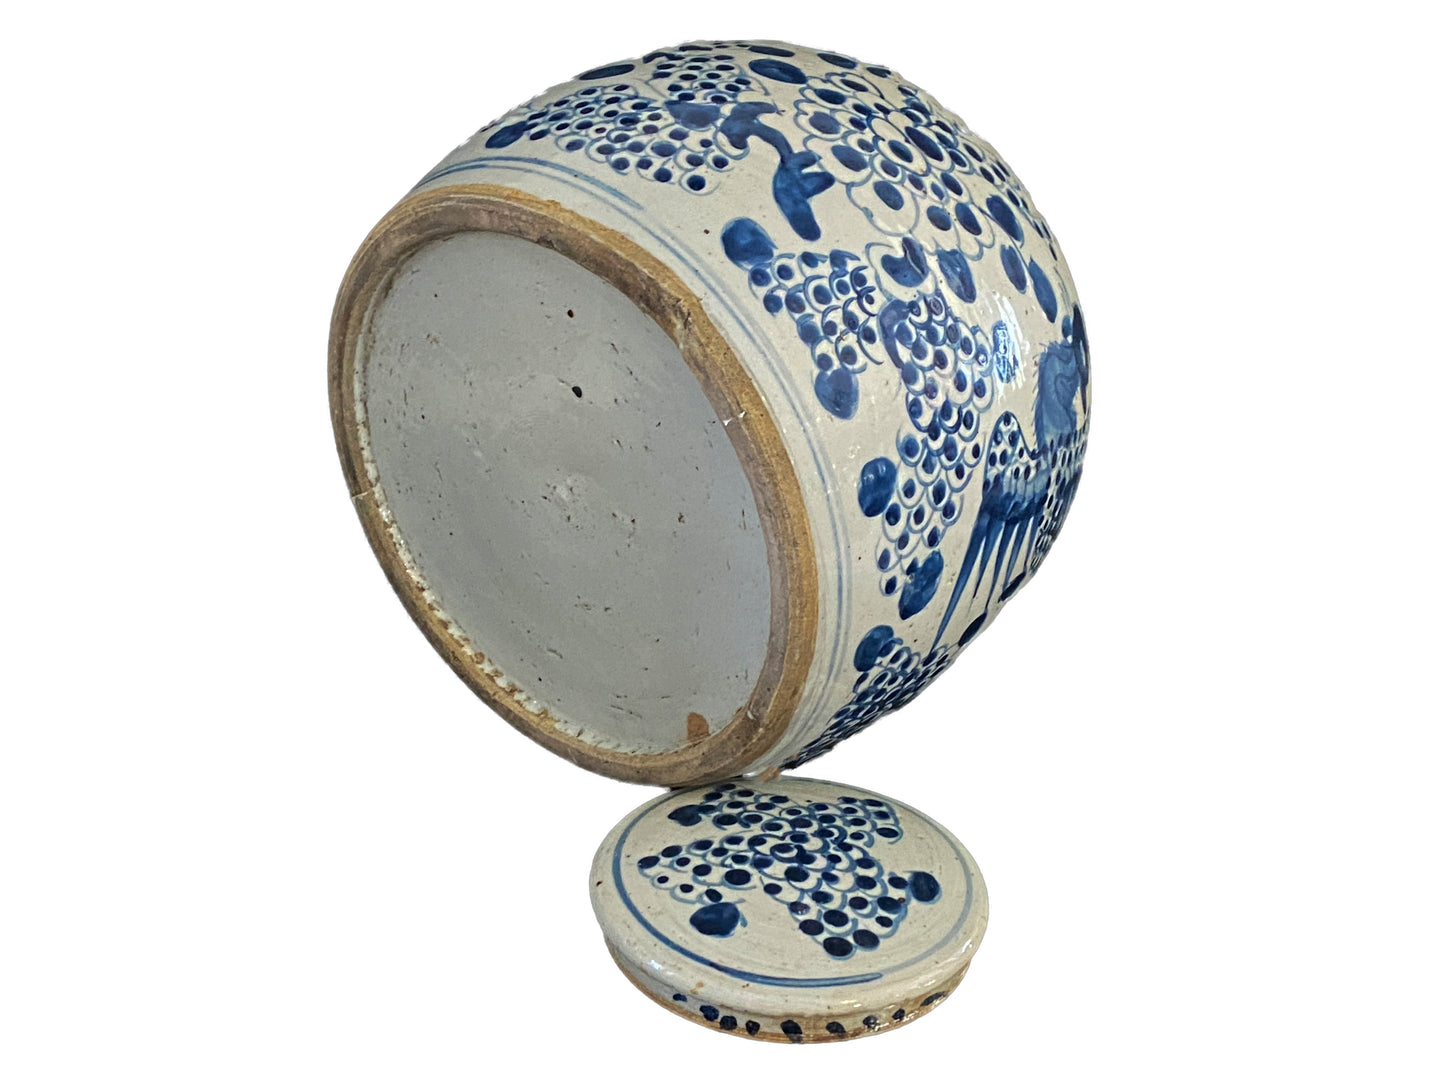 #3791 Chinoiserie Blue & White Porcelain Ginger Jar 11" H